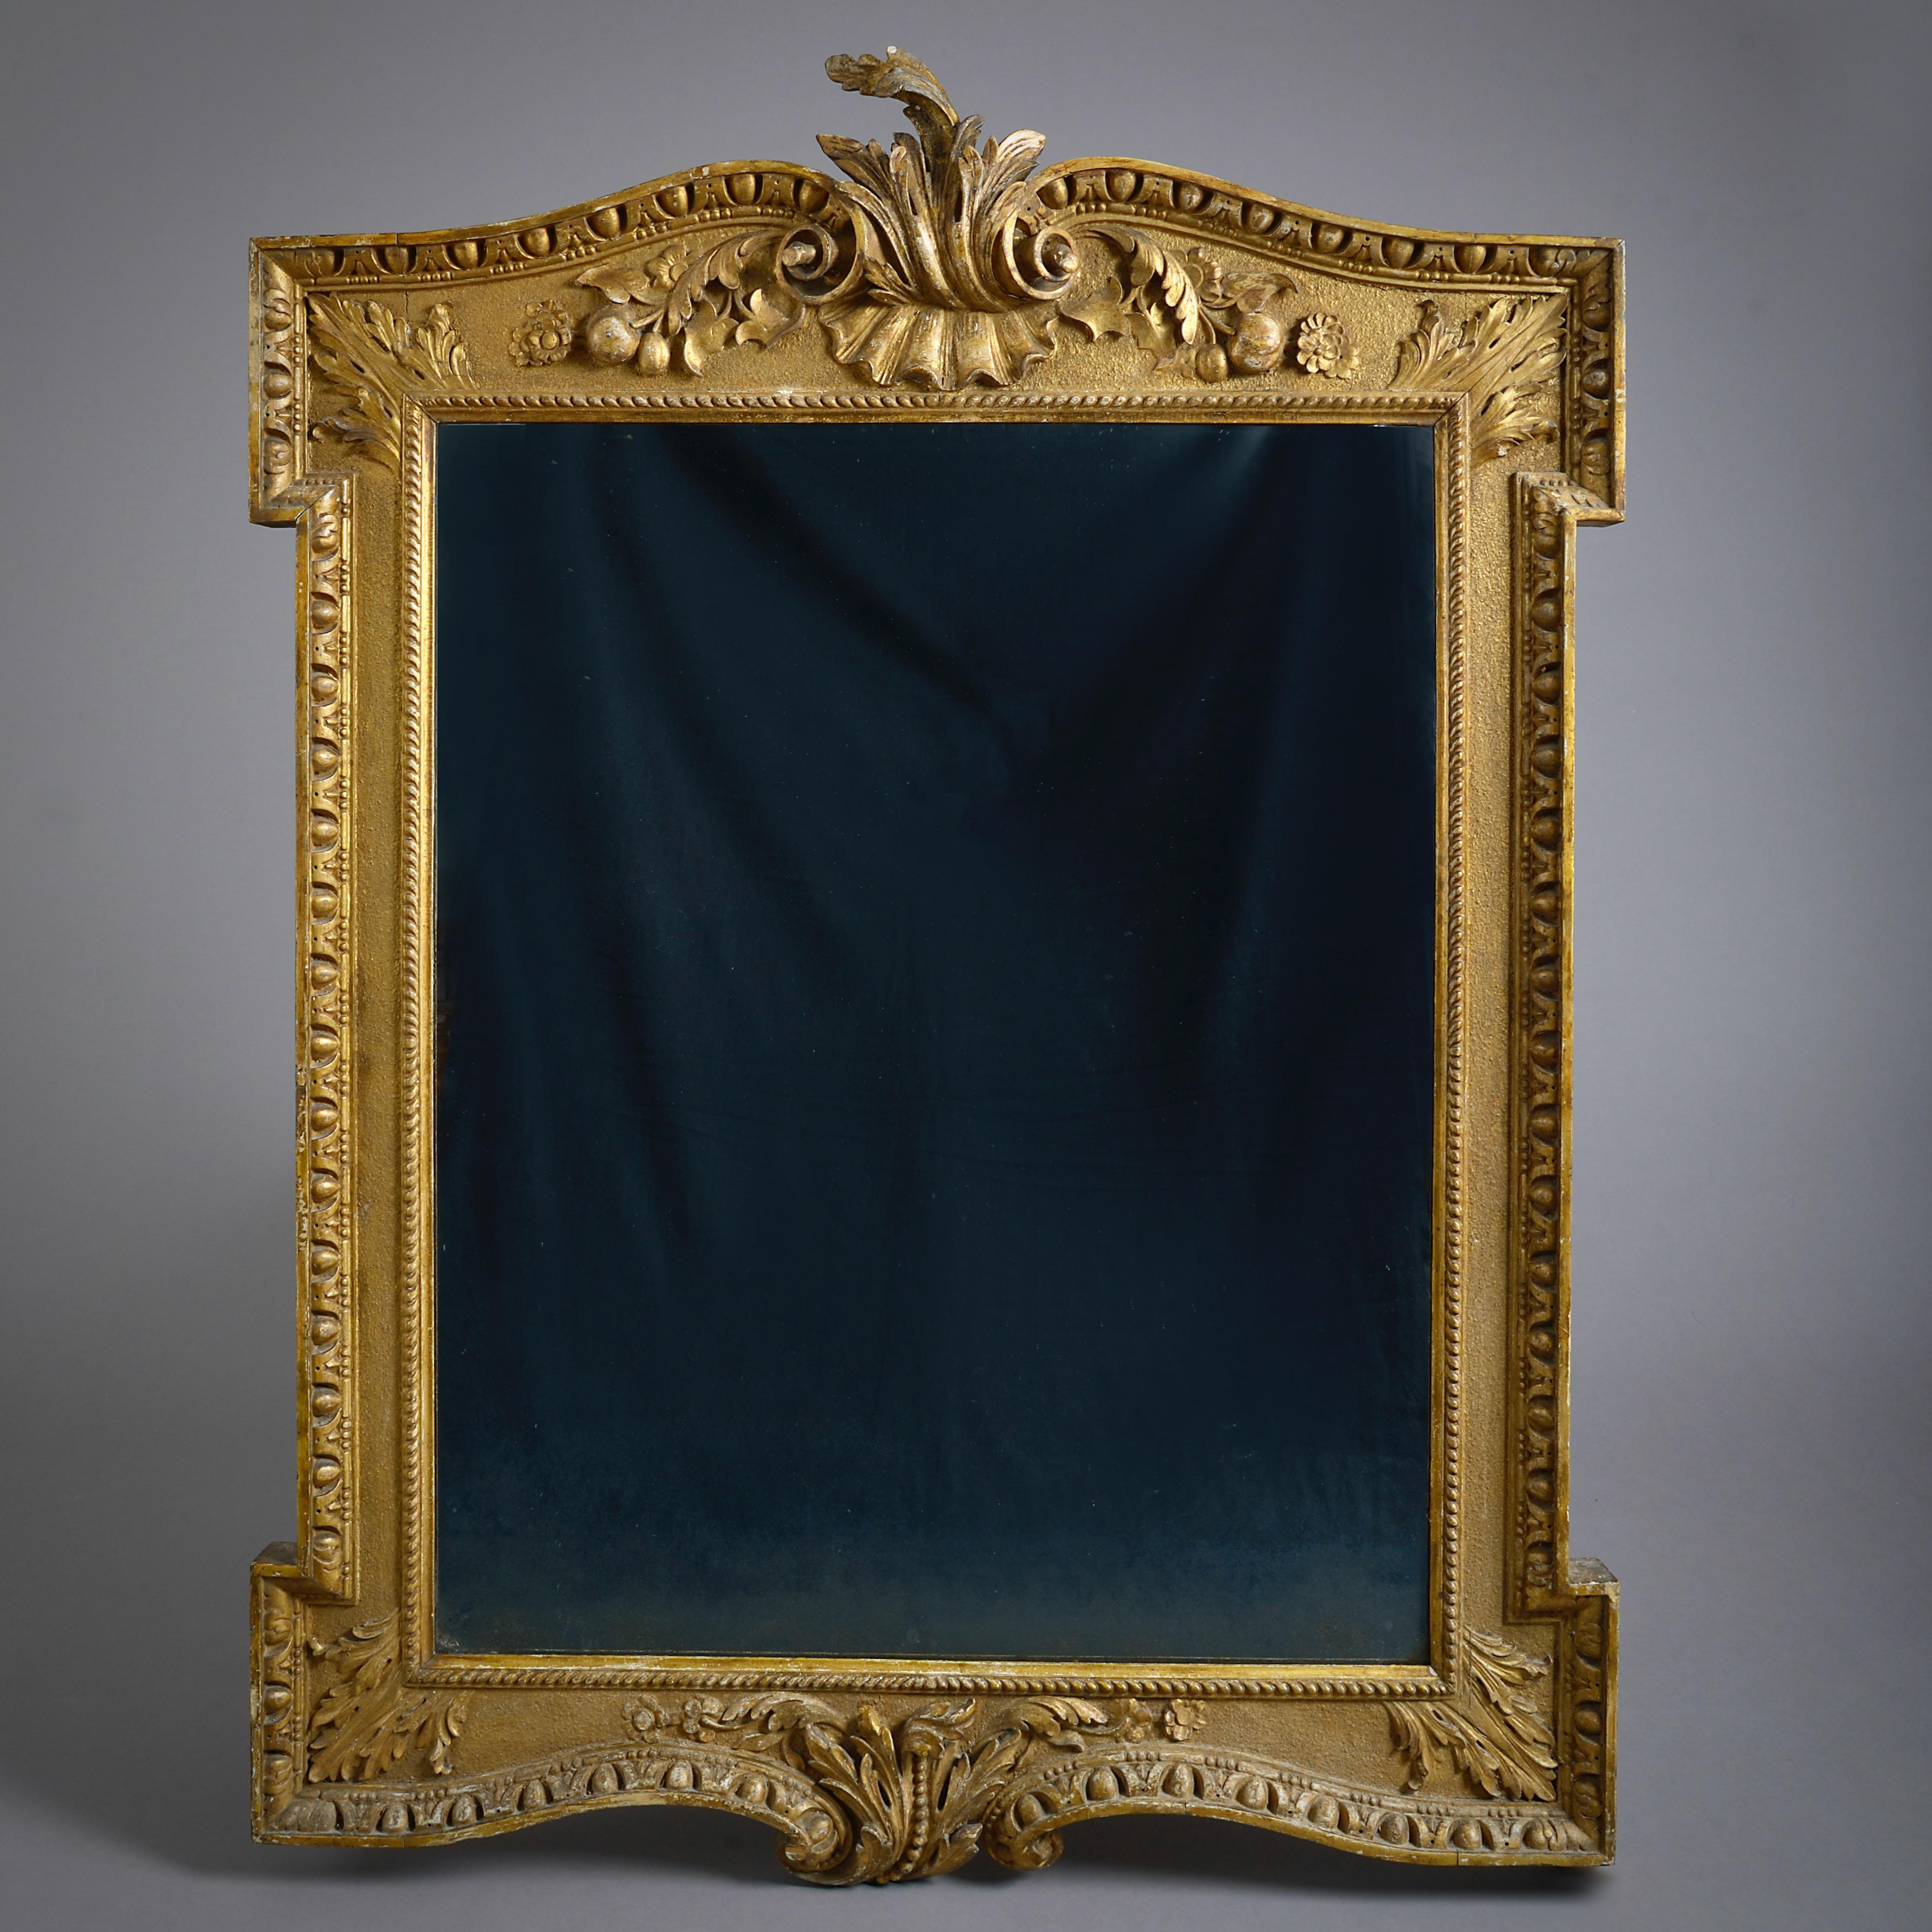 Ein schöner Spiegel aus vergoldetem Holz aus der Zeit von George II. in der Art von William Kent, um 1740.

Mit Originalvergoldung, der Teller ein Ersatz aus dem 19.